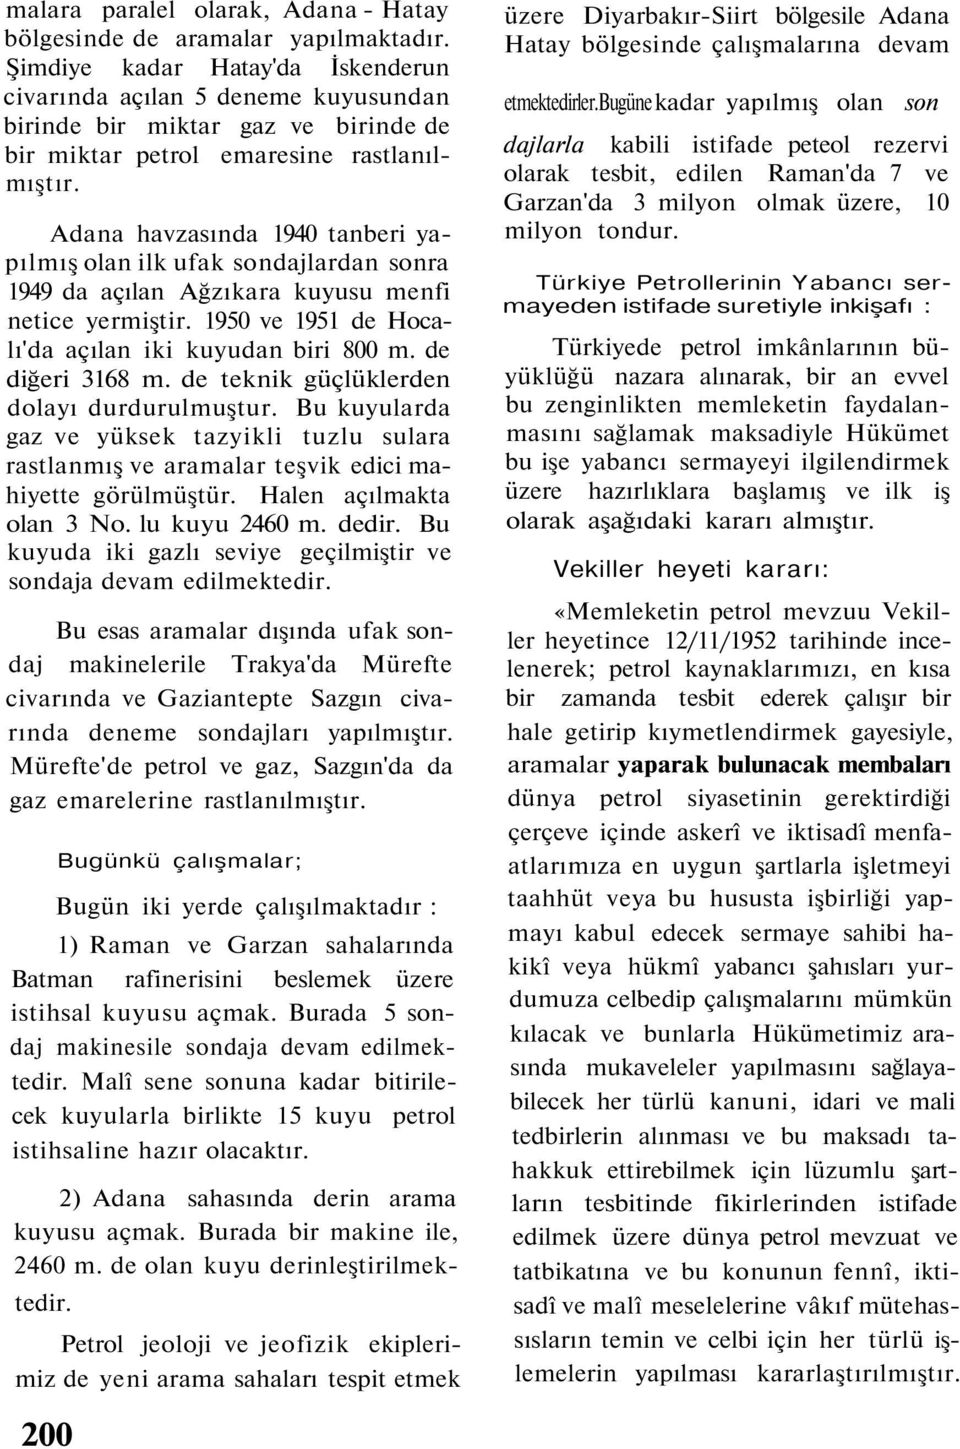 Adana havzasında 1940 tanberi yapılmış olan ilk ufak sondajlardan sonra 1949 da açılan Ağzıkara kuyusu menfi netice yermiştir. 1950 ve 1951 de Hocalı'da açılan iki kuyudan biri 800 m.